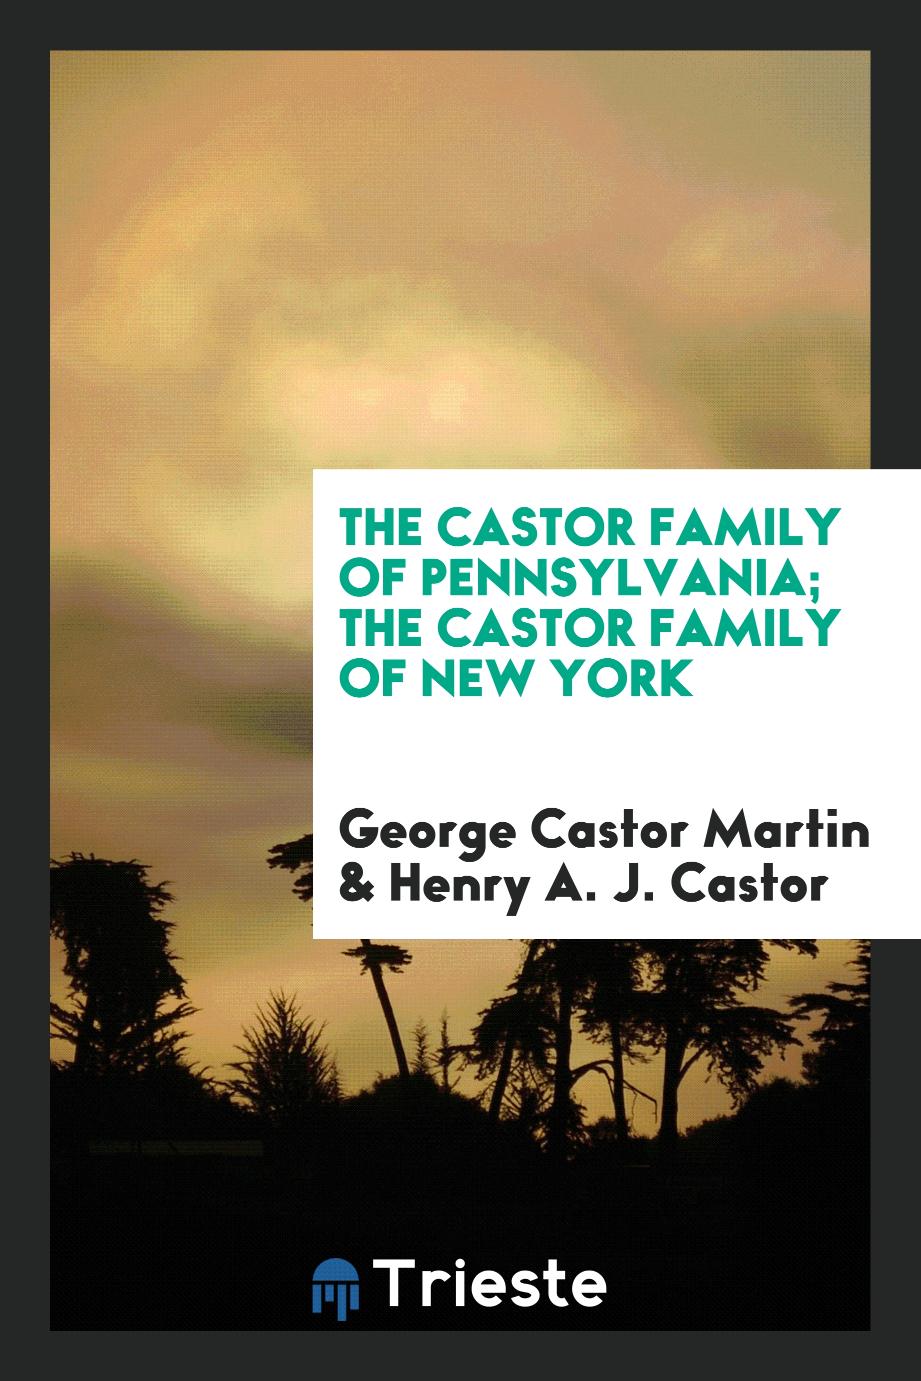 The Castor family of Pennsylvania; The Castor family of New York